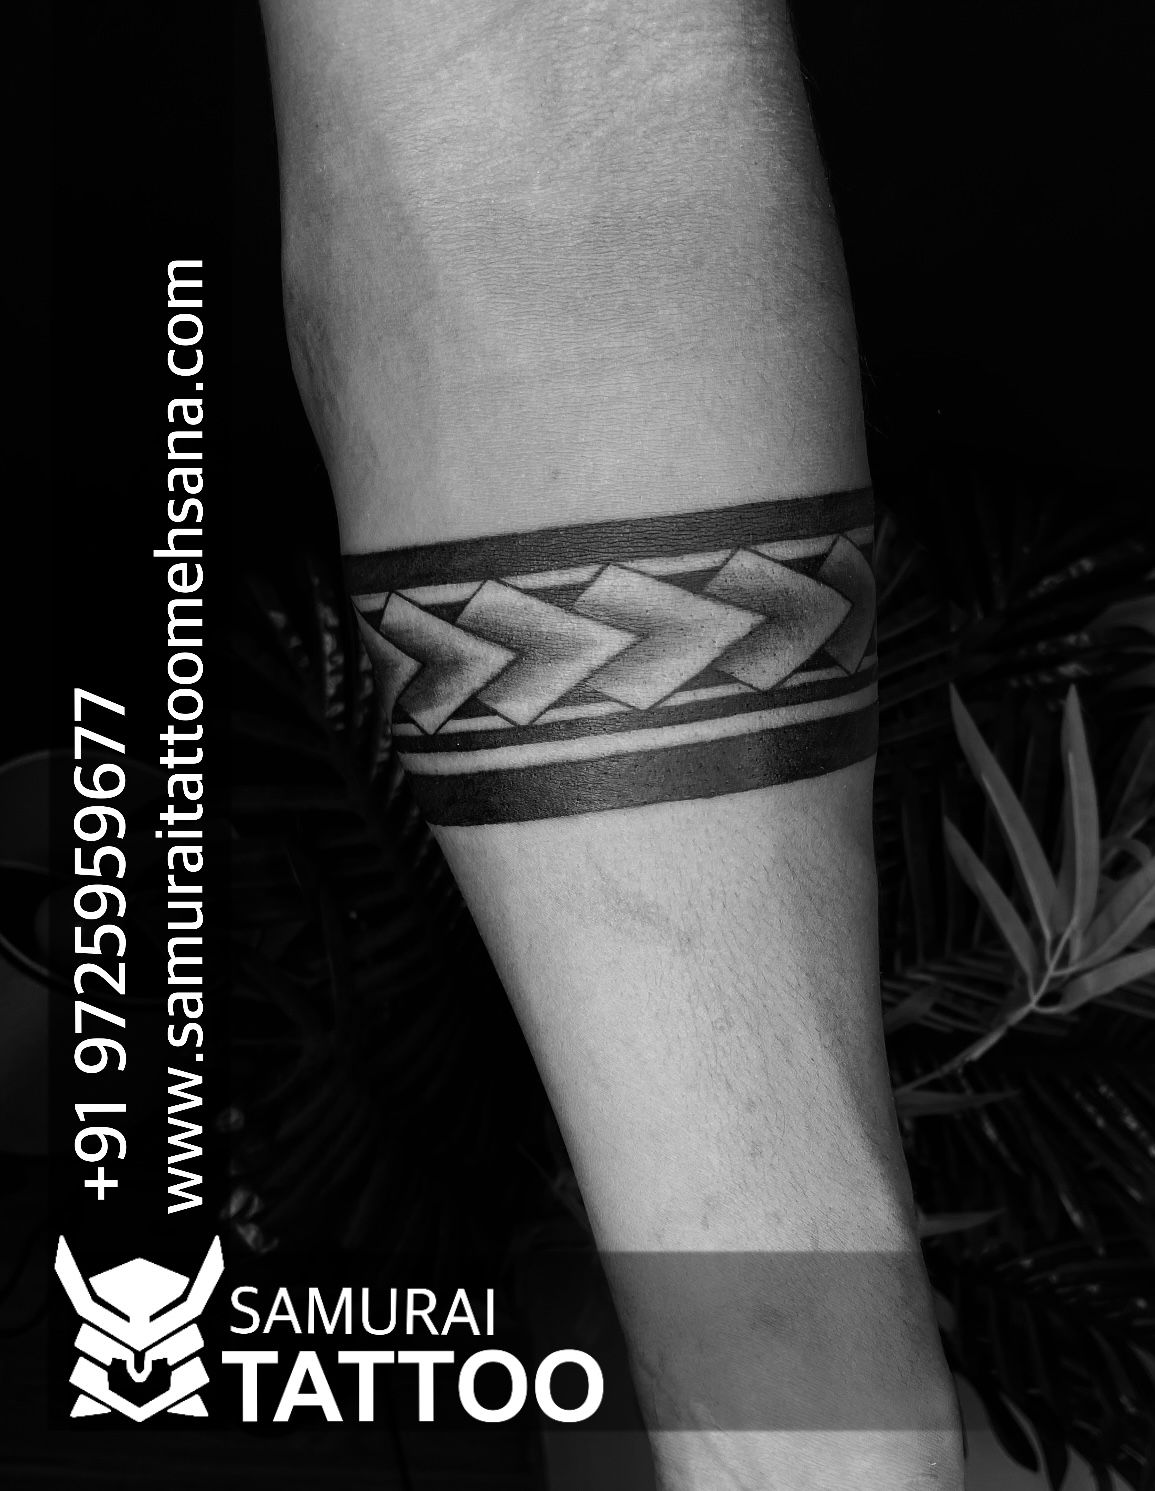 Tempoary Tattoowala Lion Tribal Full Hand Band Round Tattoo Waterproof  Temporary Body Tattoo : Amazon.in: Beauty